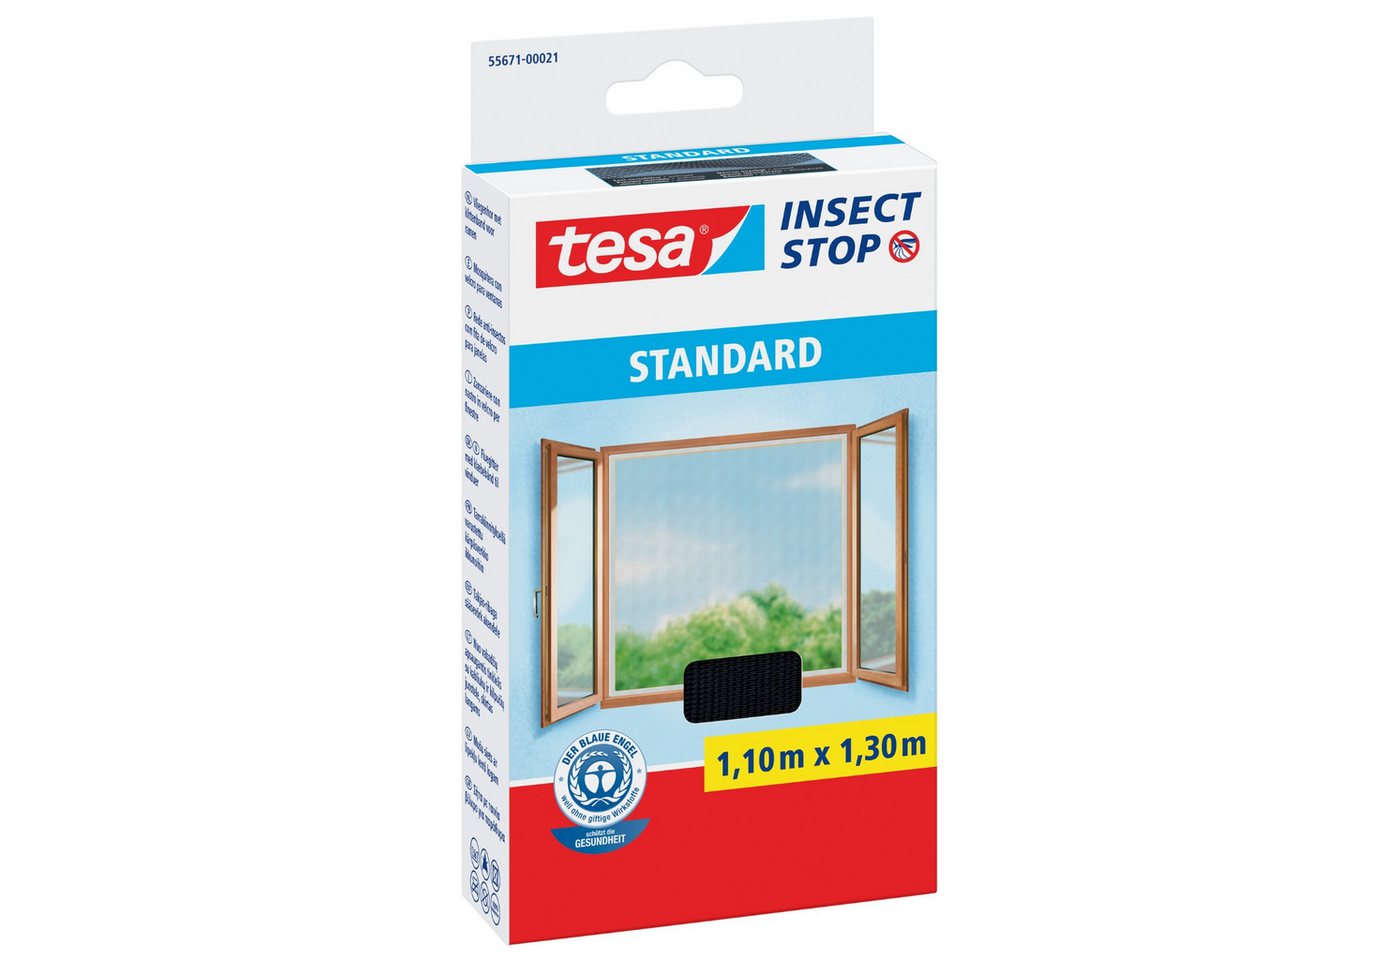 tesa Fliegengitter-Gewebe tesa Fliegengitter Insect Stop STANDARD für Fenster - 1,1 m x 1,3 m - von tesa